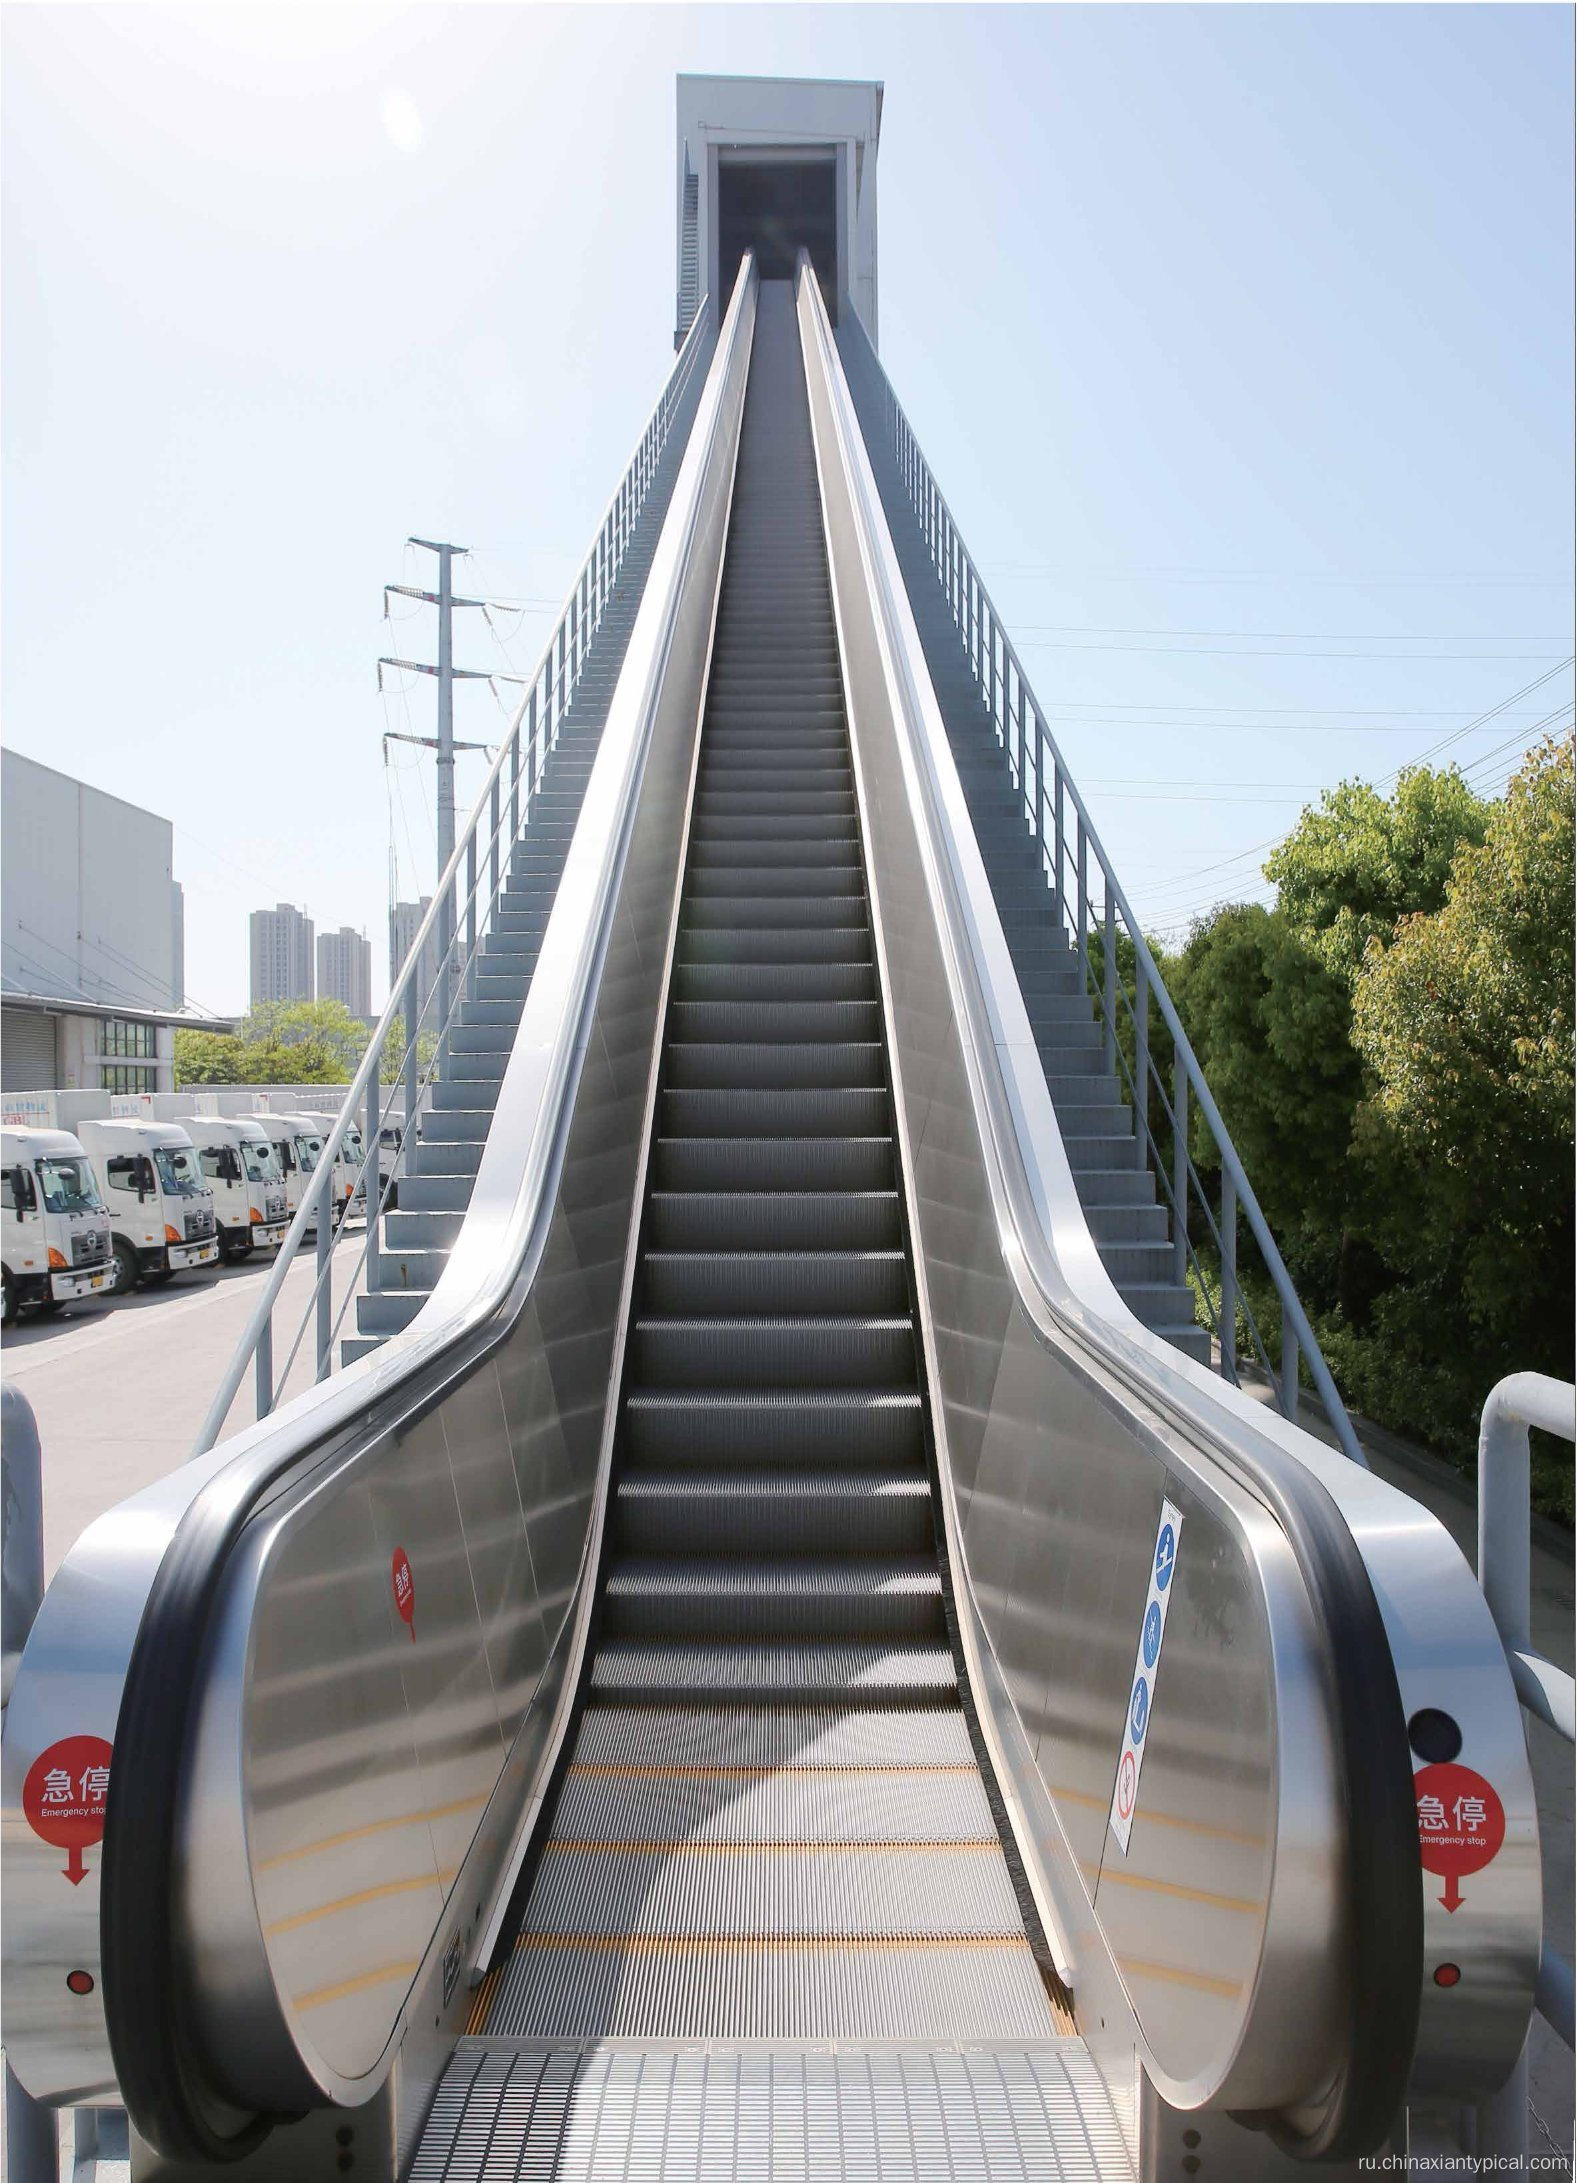 Общественный транспорт тяжелый эскалатор для железнодорожного вокзала и метро